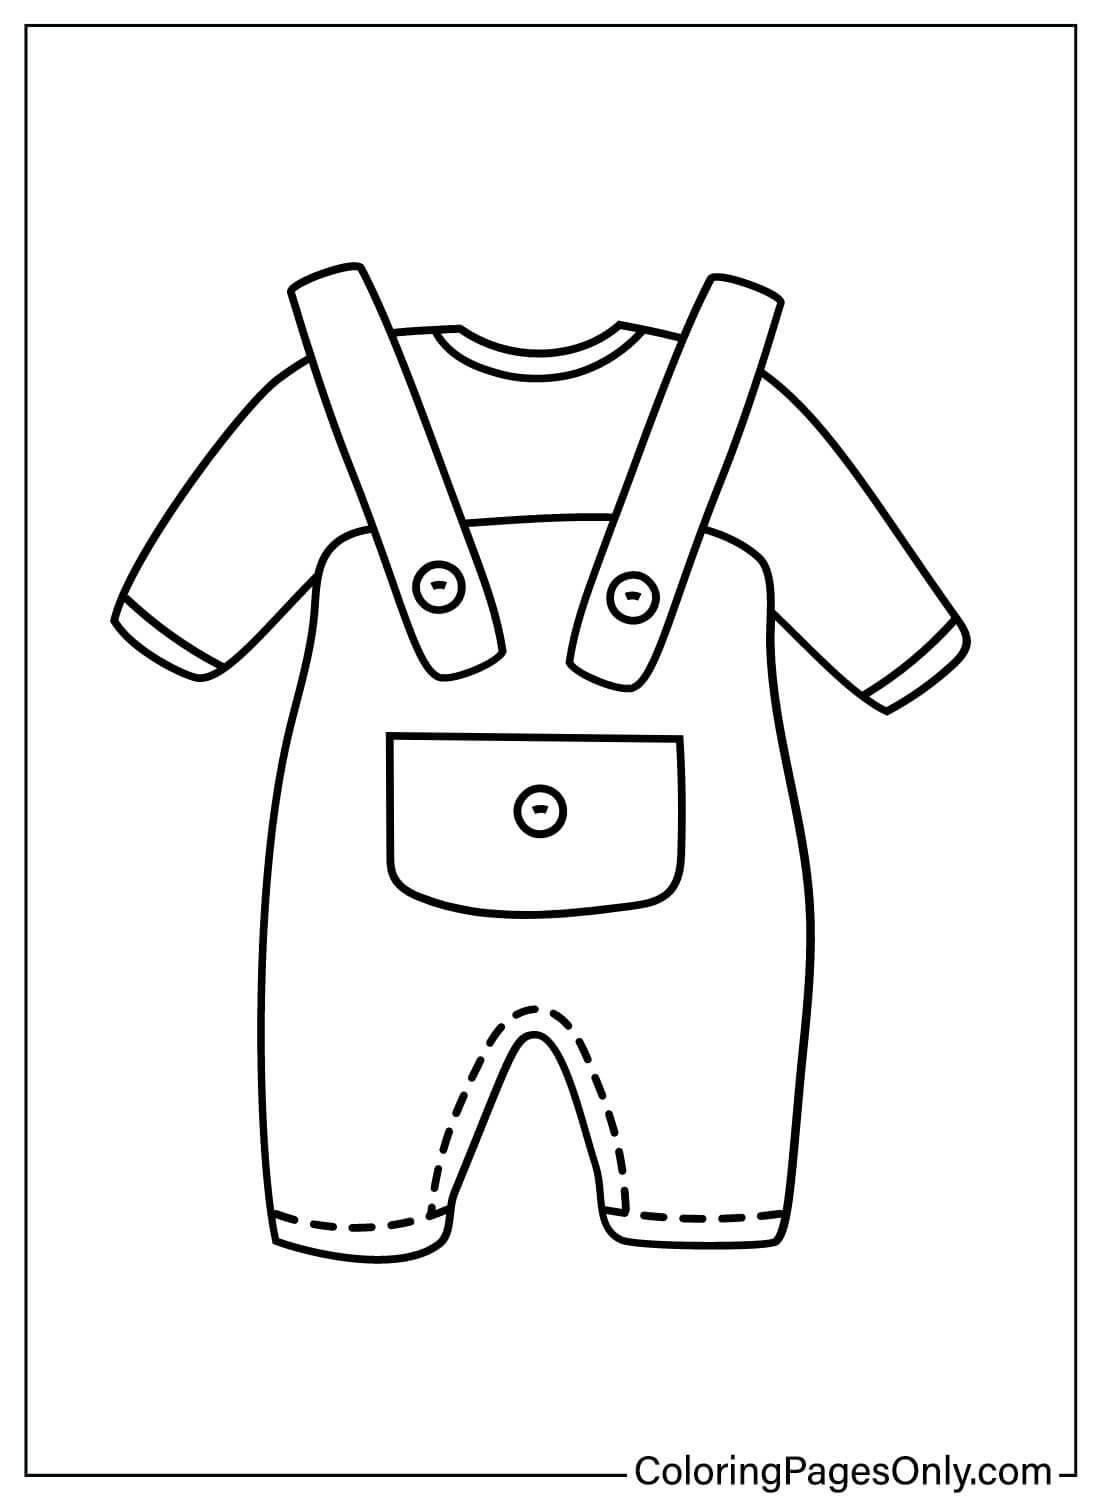 婴儿服装着色页为儿童从婴儿服装